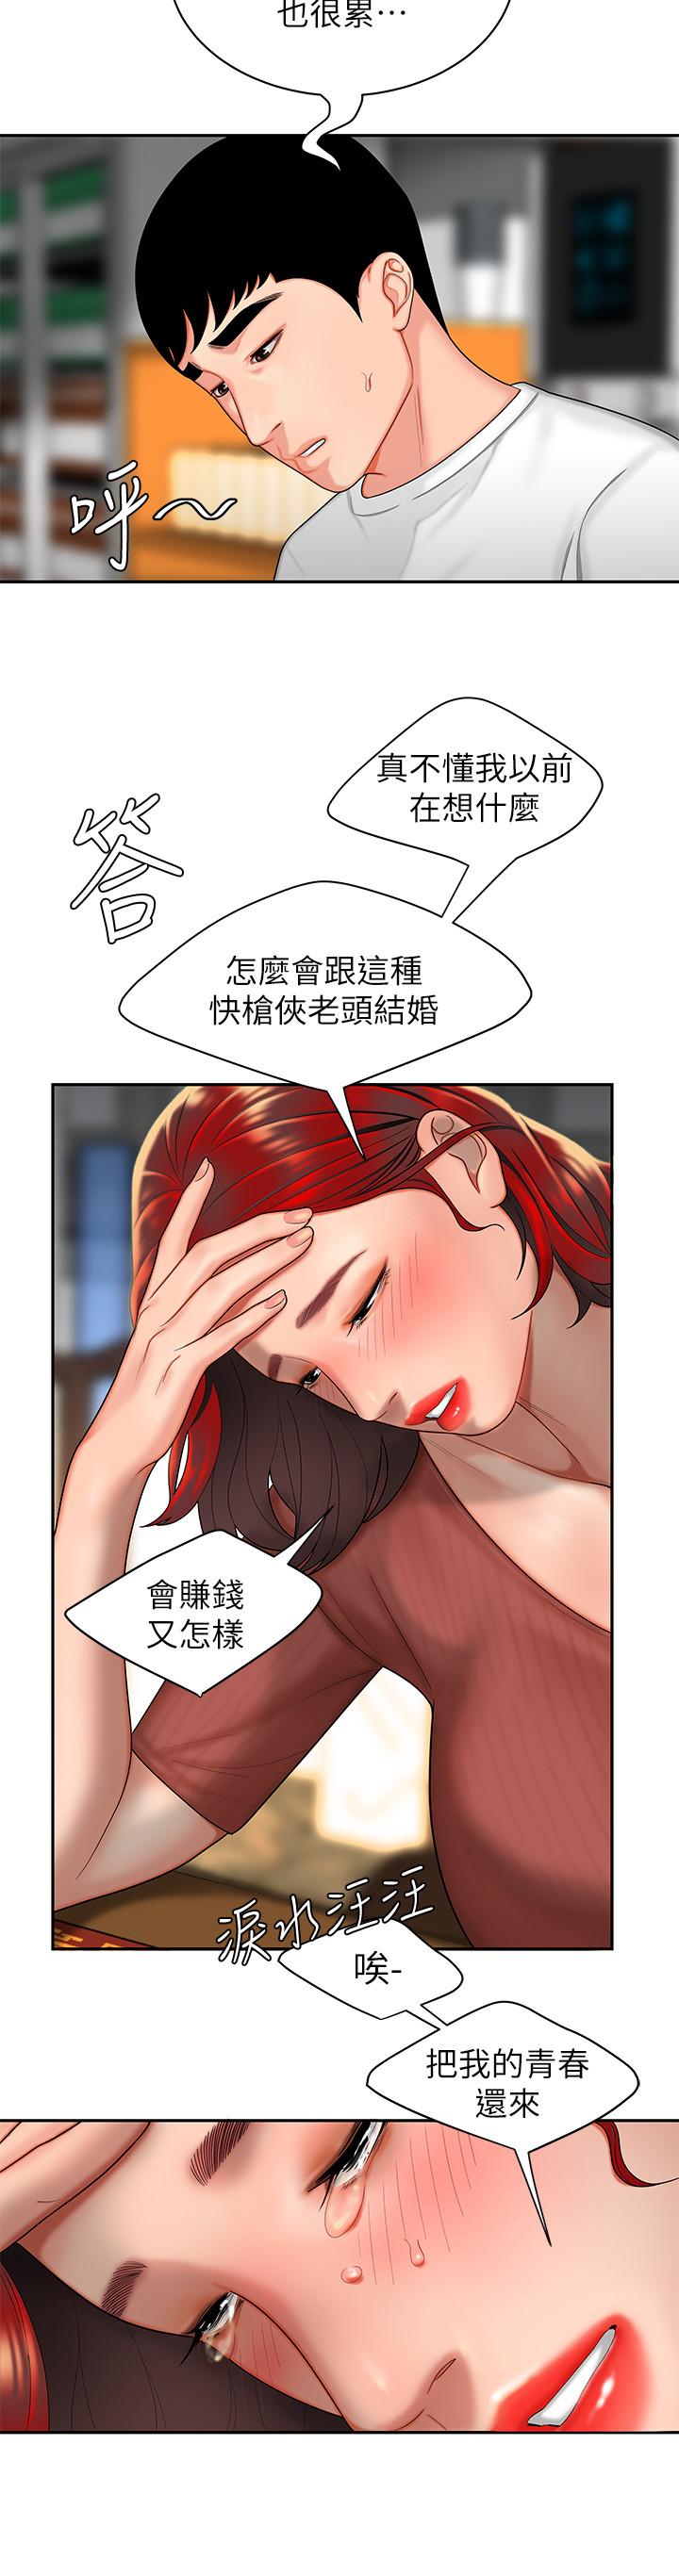 韩国污漫画 幸福外送員 第1话-令人垂涎的老板娘 27